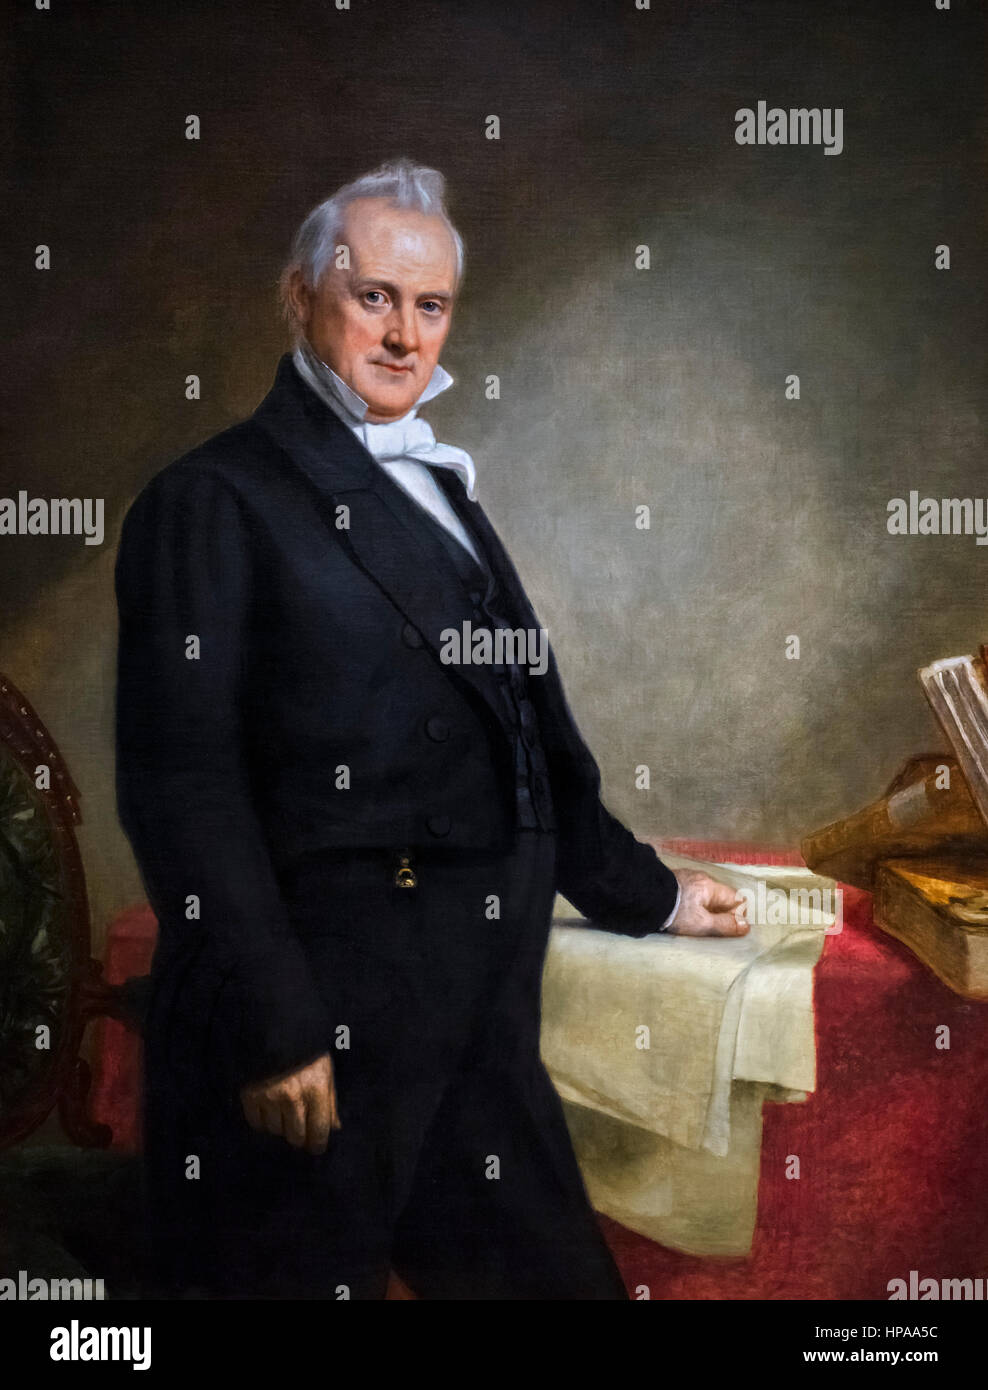 James Buchanan (1791-1868). Porträt des US-Präsidenten James Buchanan von 15. von George Peter Alexander Healy, Öl auf Leinwand, 1859 Stockfoto